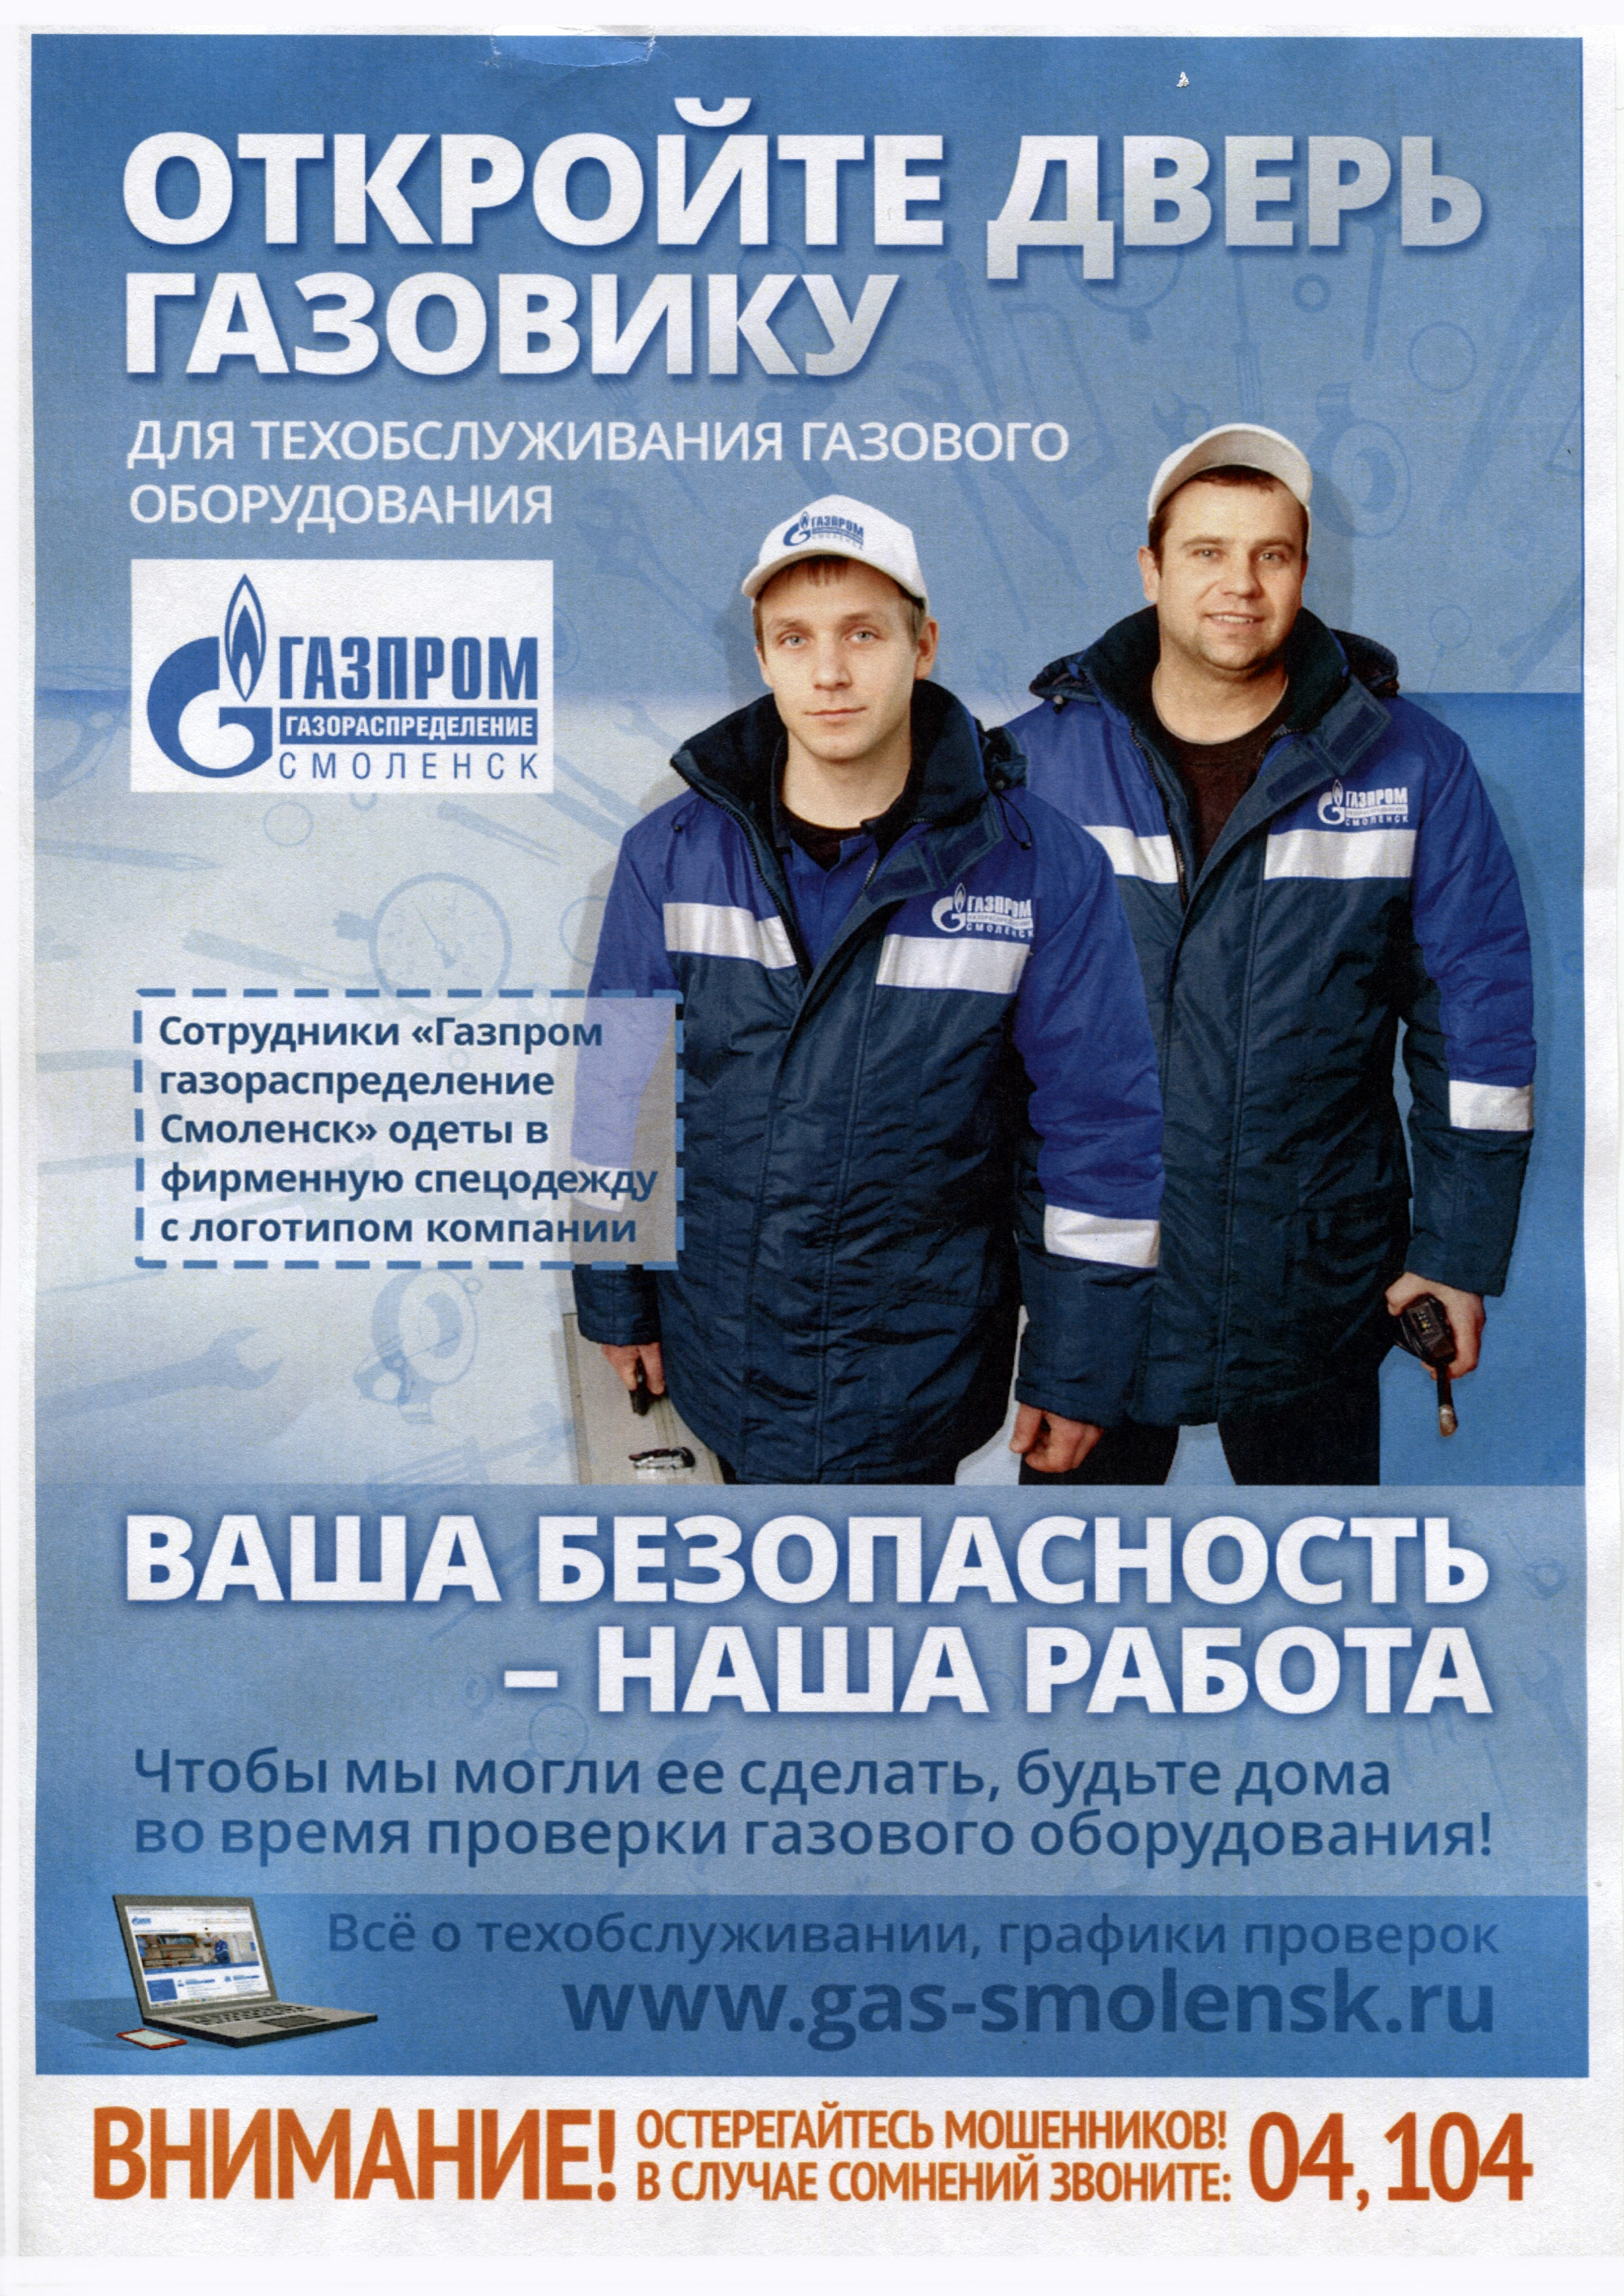 Организация газовой службы. Реклама газовой компании. Работник Газпрома.